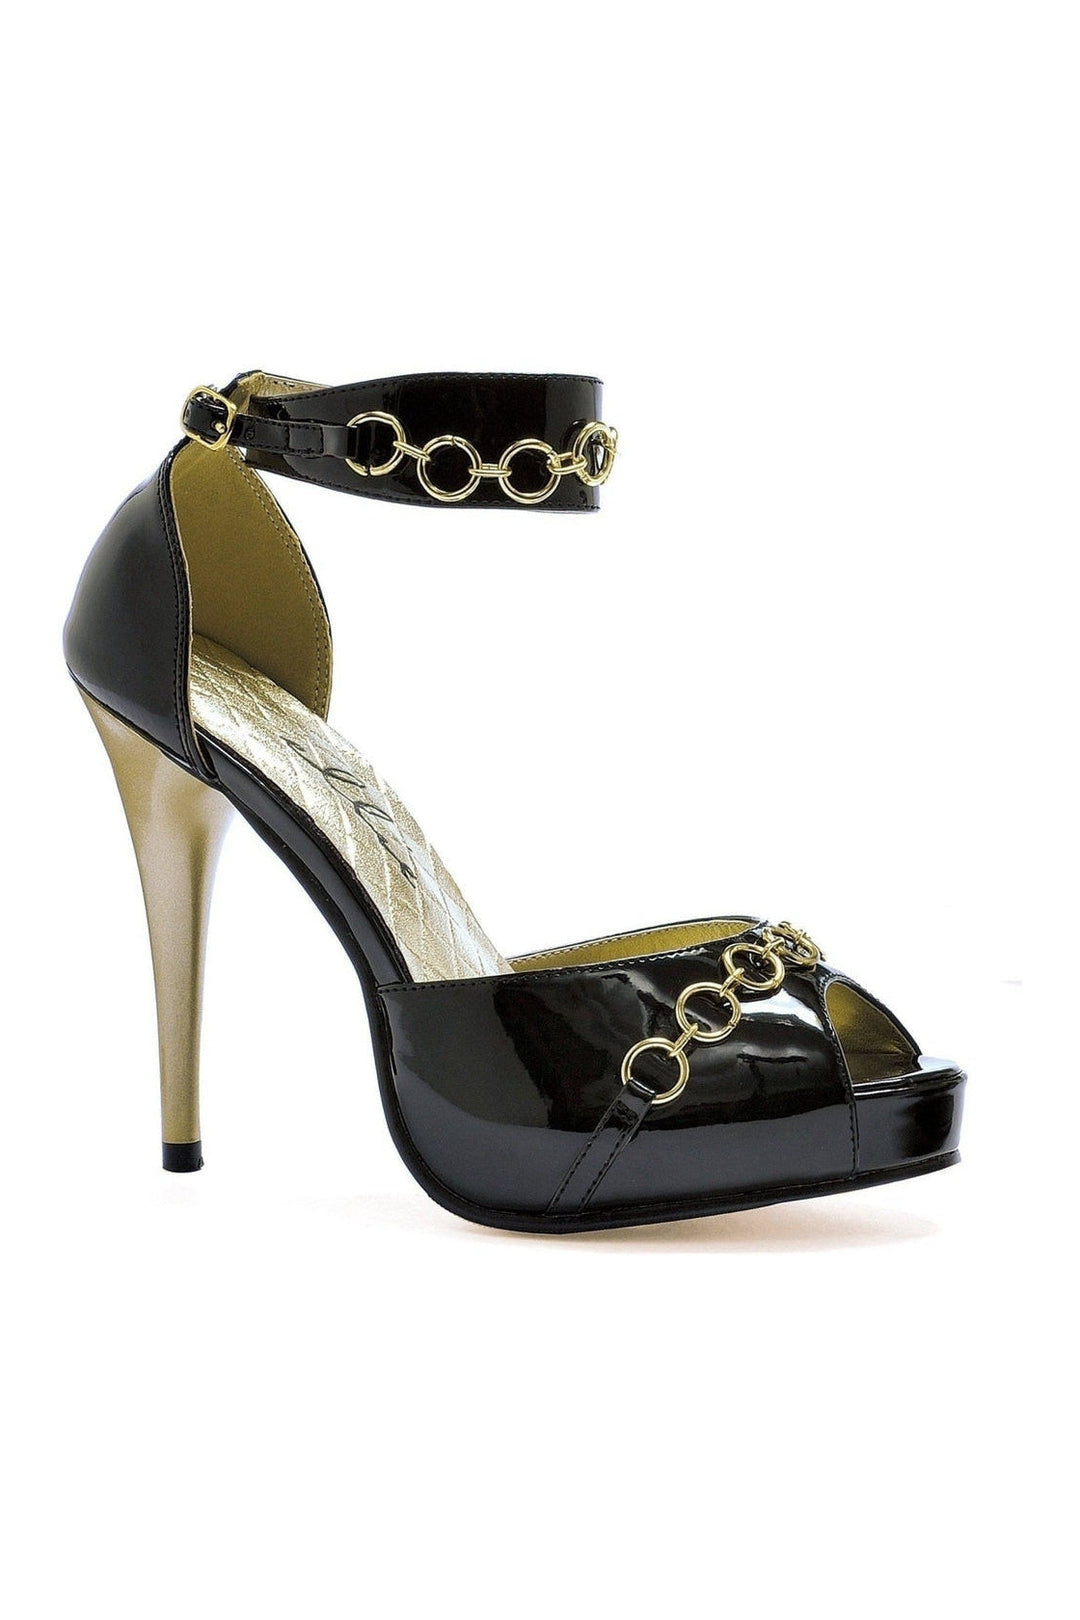 428-CUFF Fashion Sandal | Black Patent-Ellie Shoes-SEXYSHOES.COM